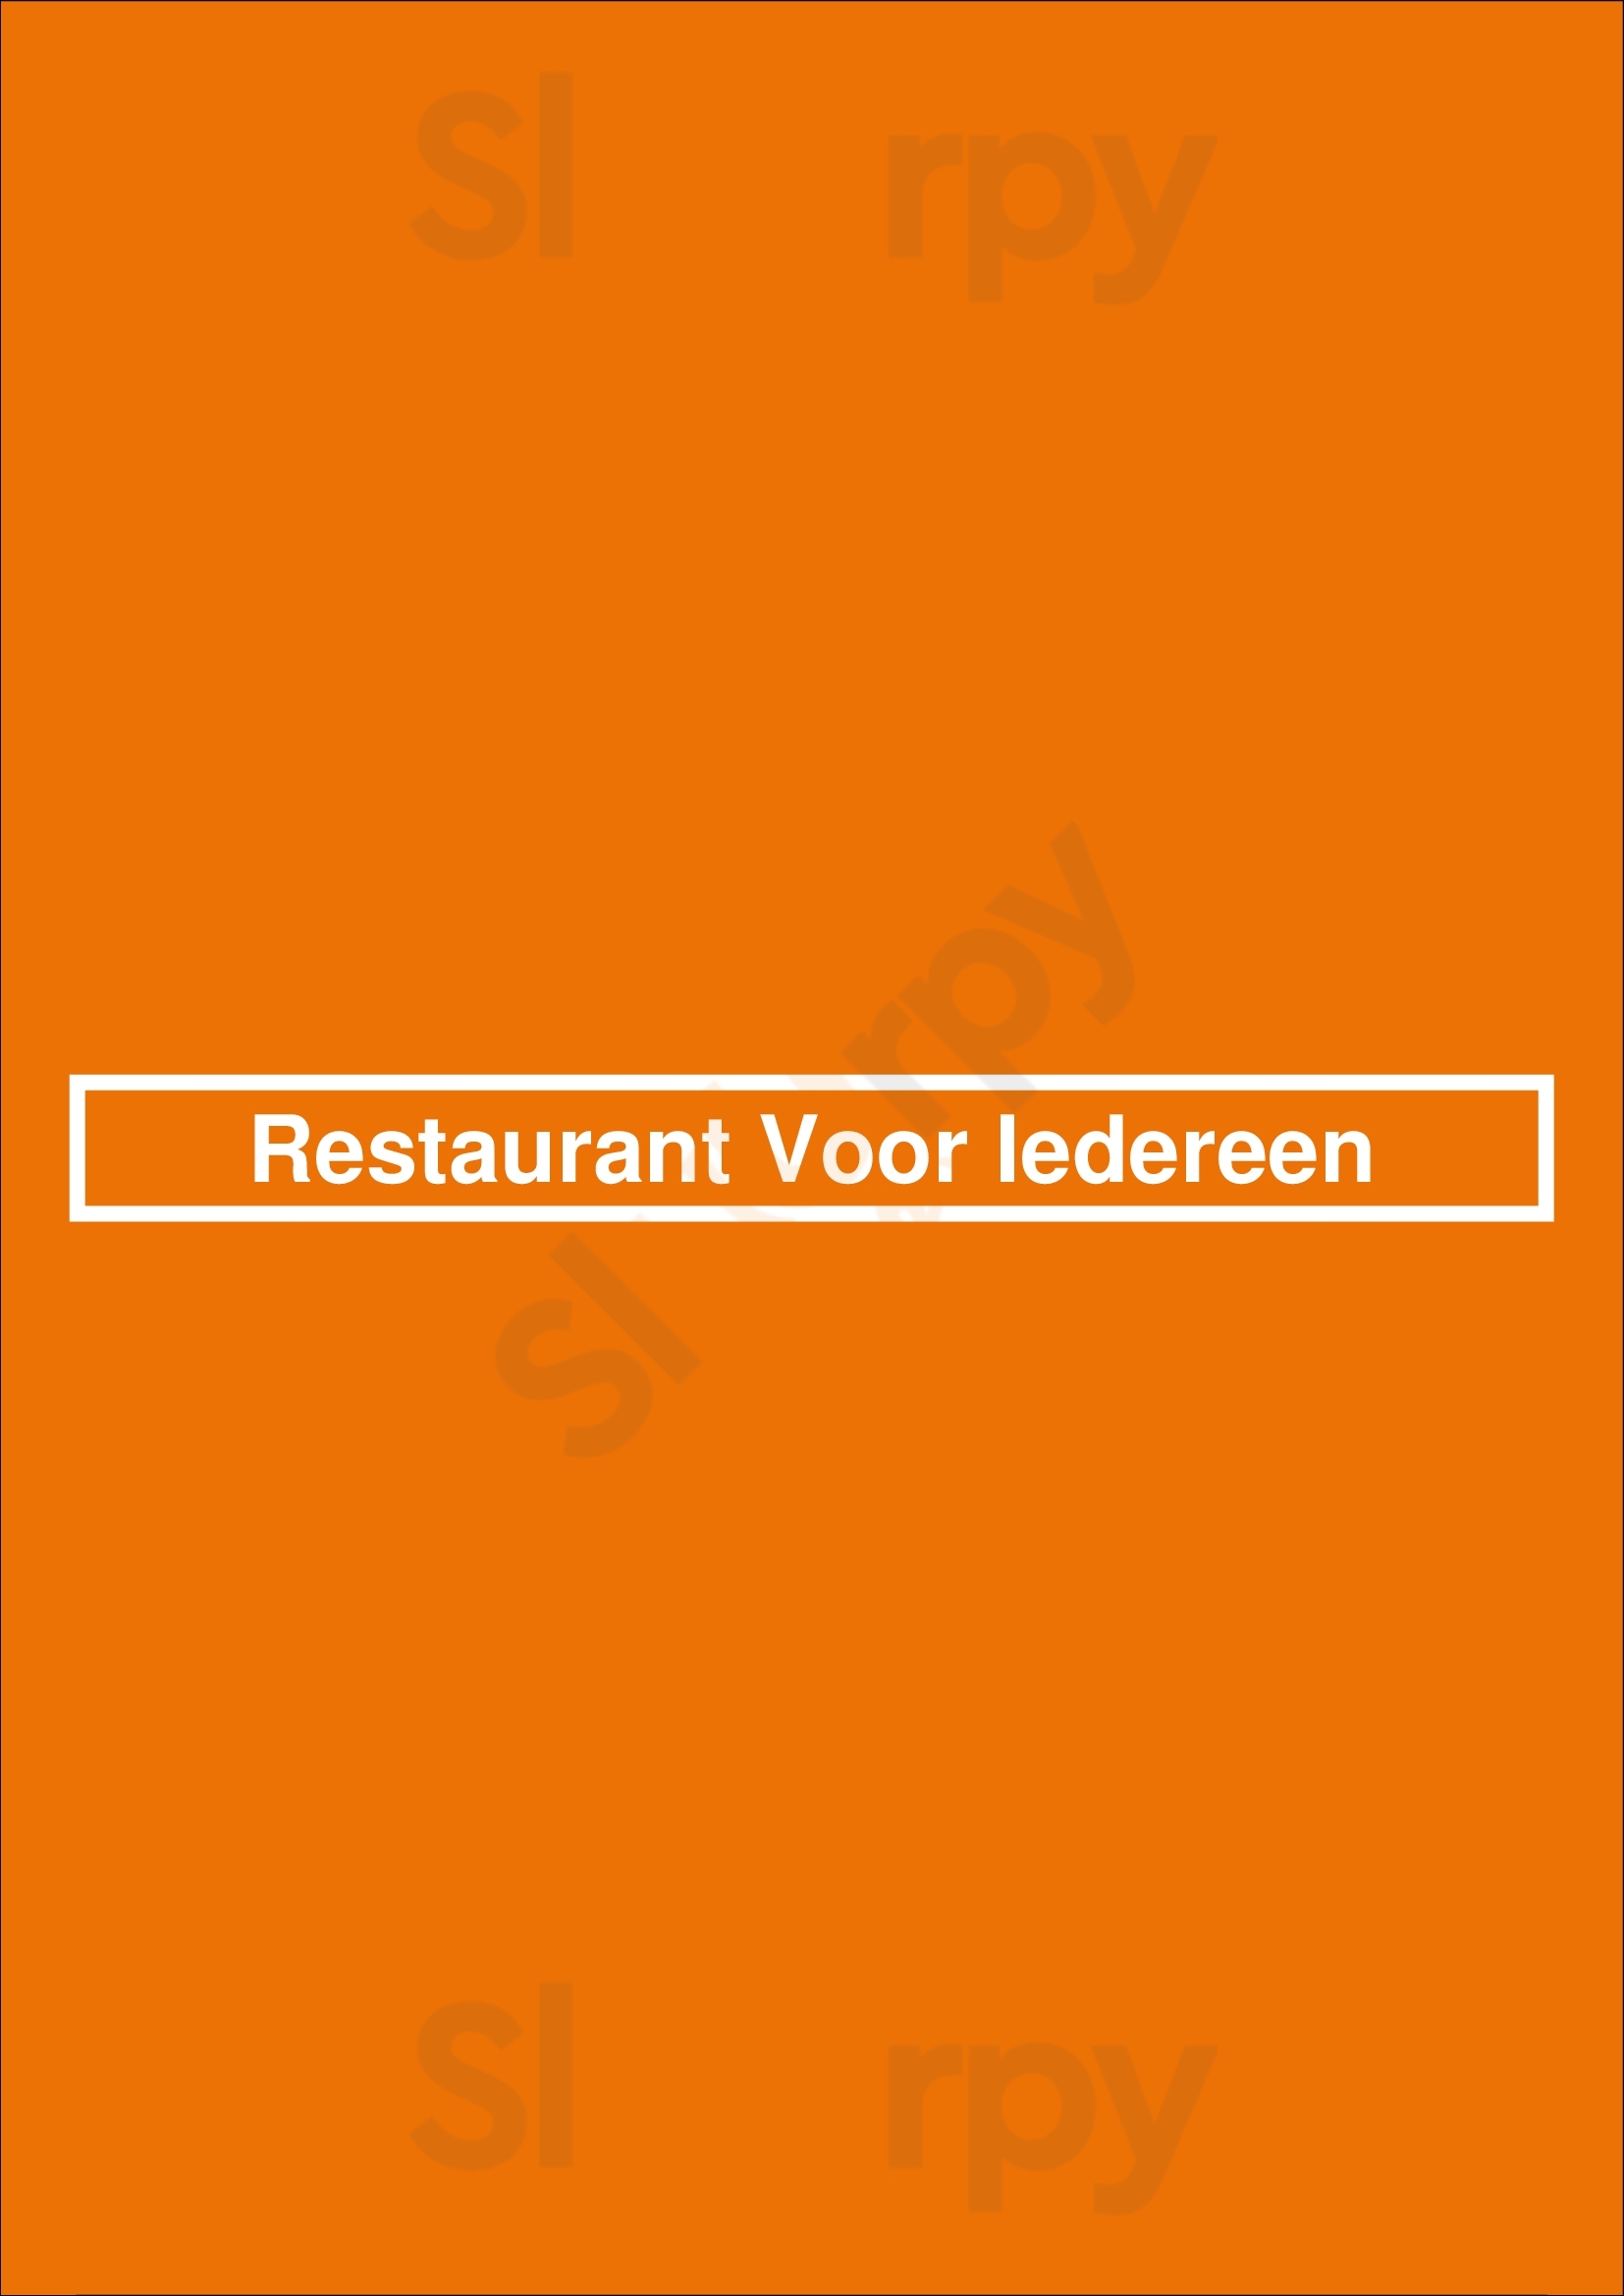 Restaurant Voor Iedereen Amersfoort Menu - 1